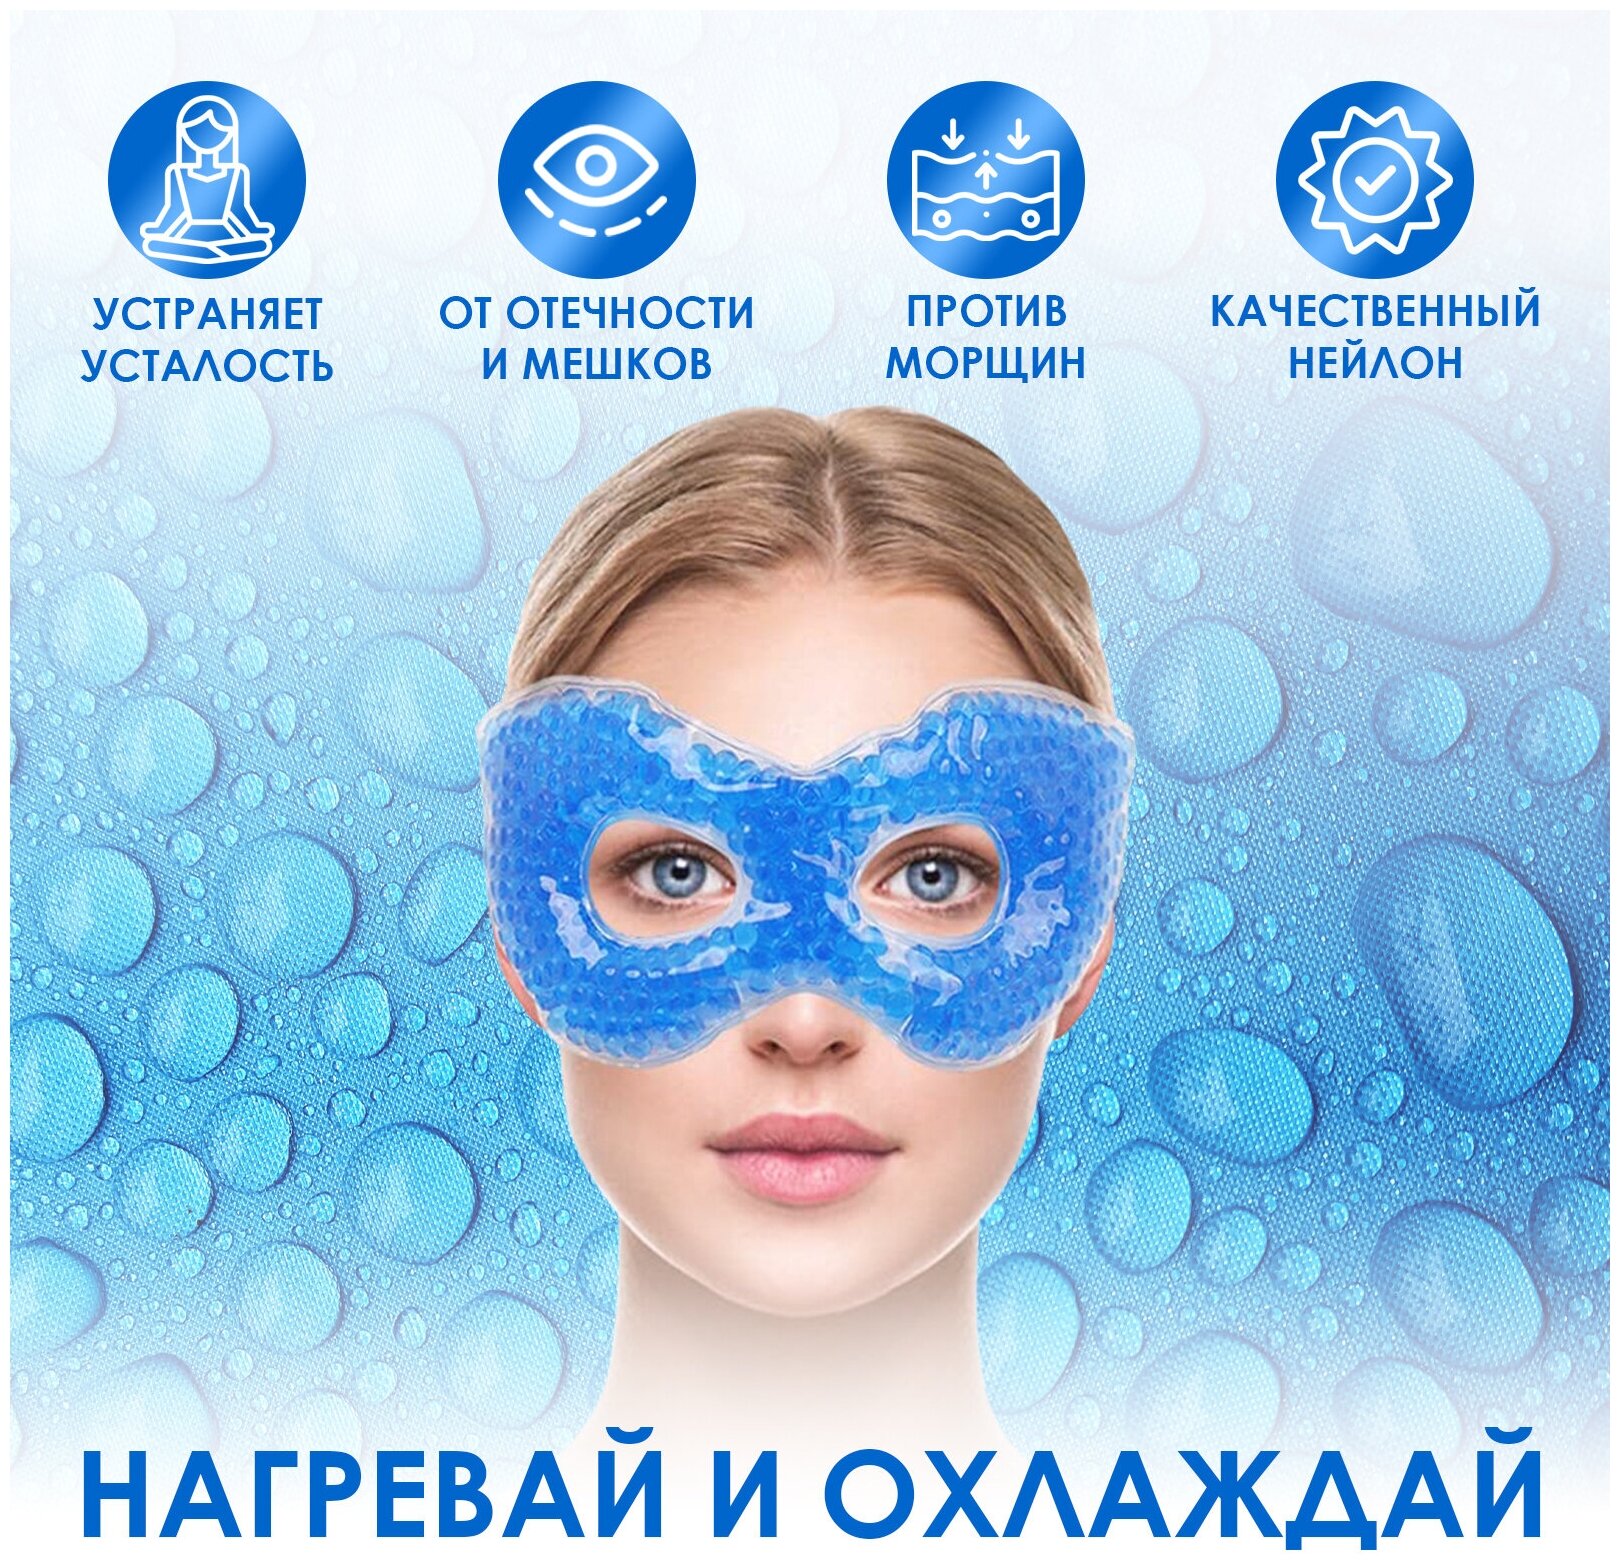 Гелевая маска компресс для снятия усталости глаз, холодный горячий эффект, маска для глаз гелевая, BloomingHome accents. BH-GM-02